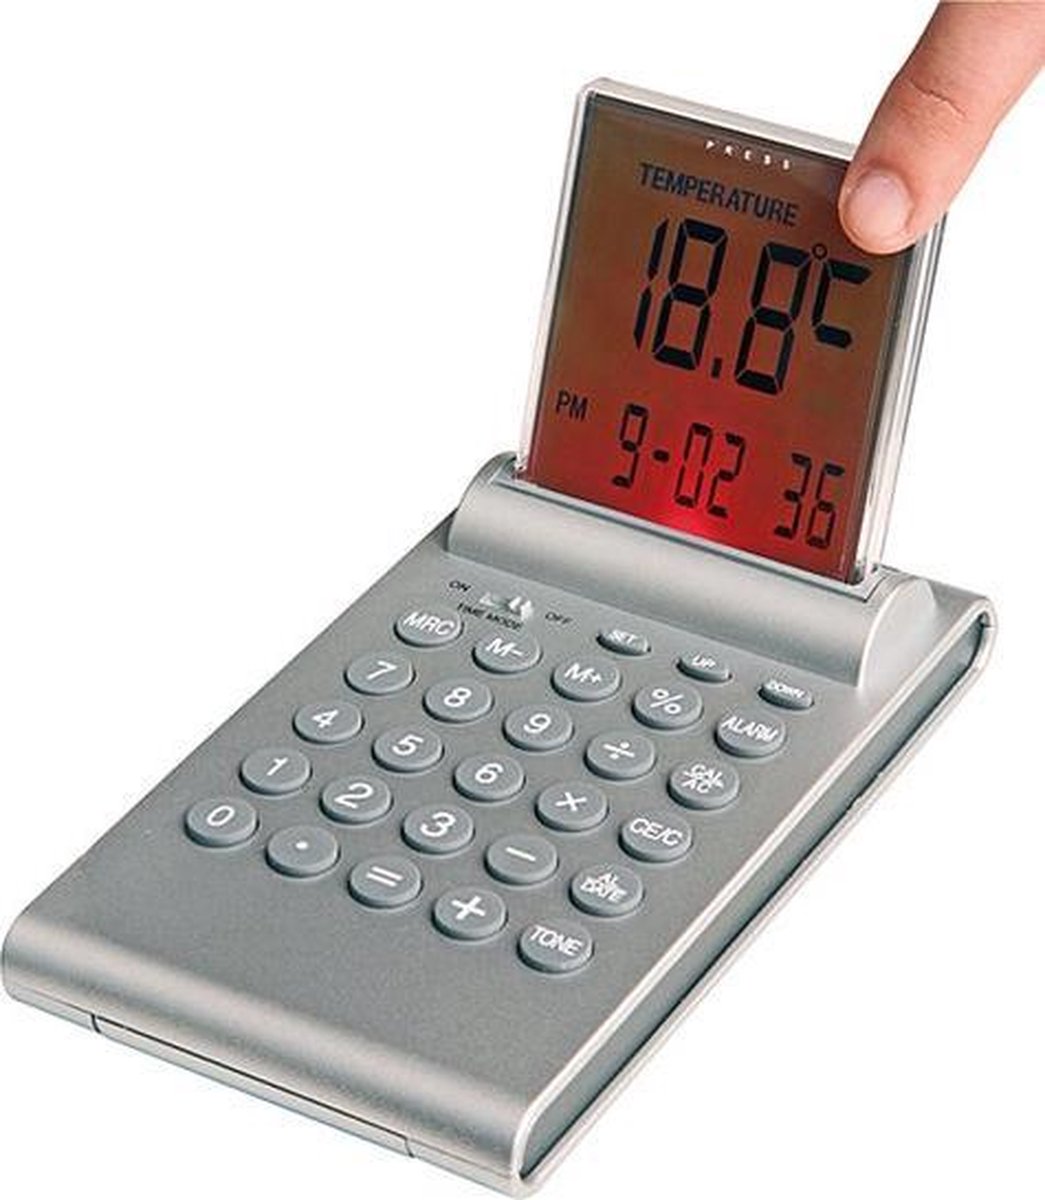 Klok met alarm, thermometer en calculator